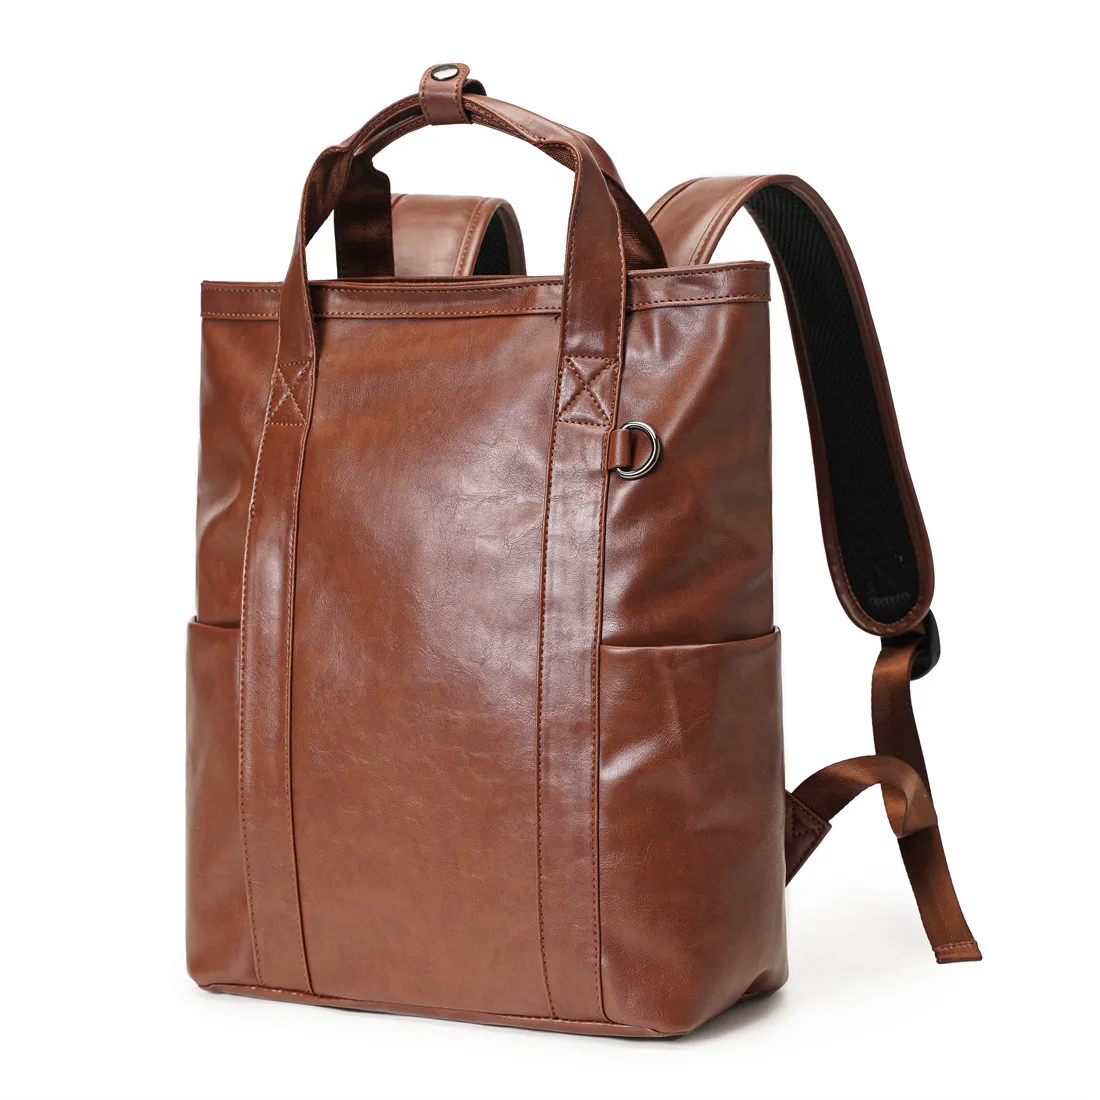 Men Vintage Backpack Female Leather Bag Women's Backpack Fashion School Bag High Quality Leisure Shoulder Bag For Girls Boys Handbags